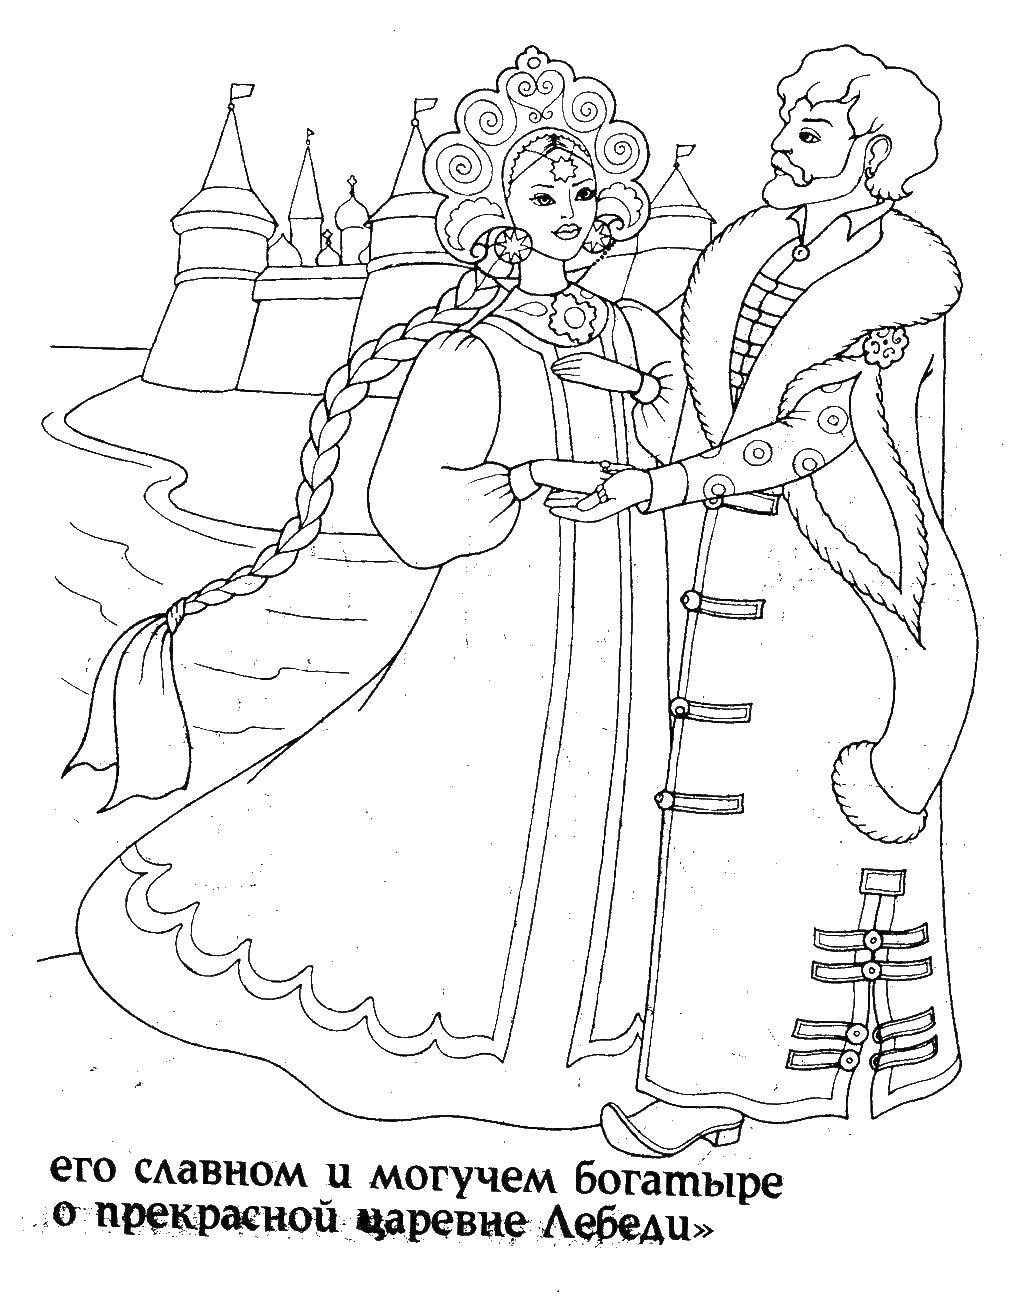 Coloring Tsar Saltan and Swan Princess. Category Fairy tales. Tags:  Tsar Saltan.